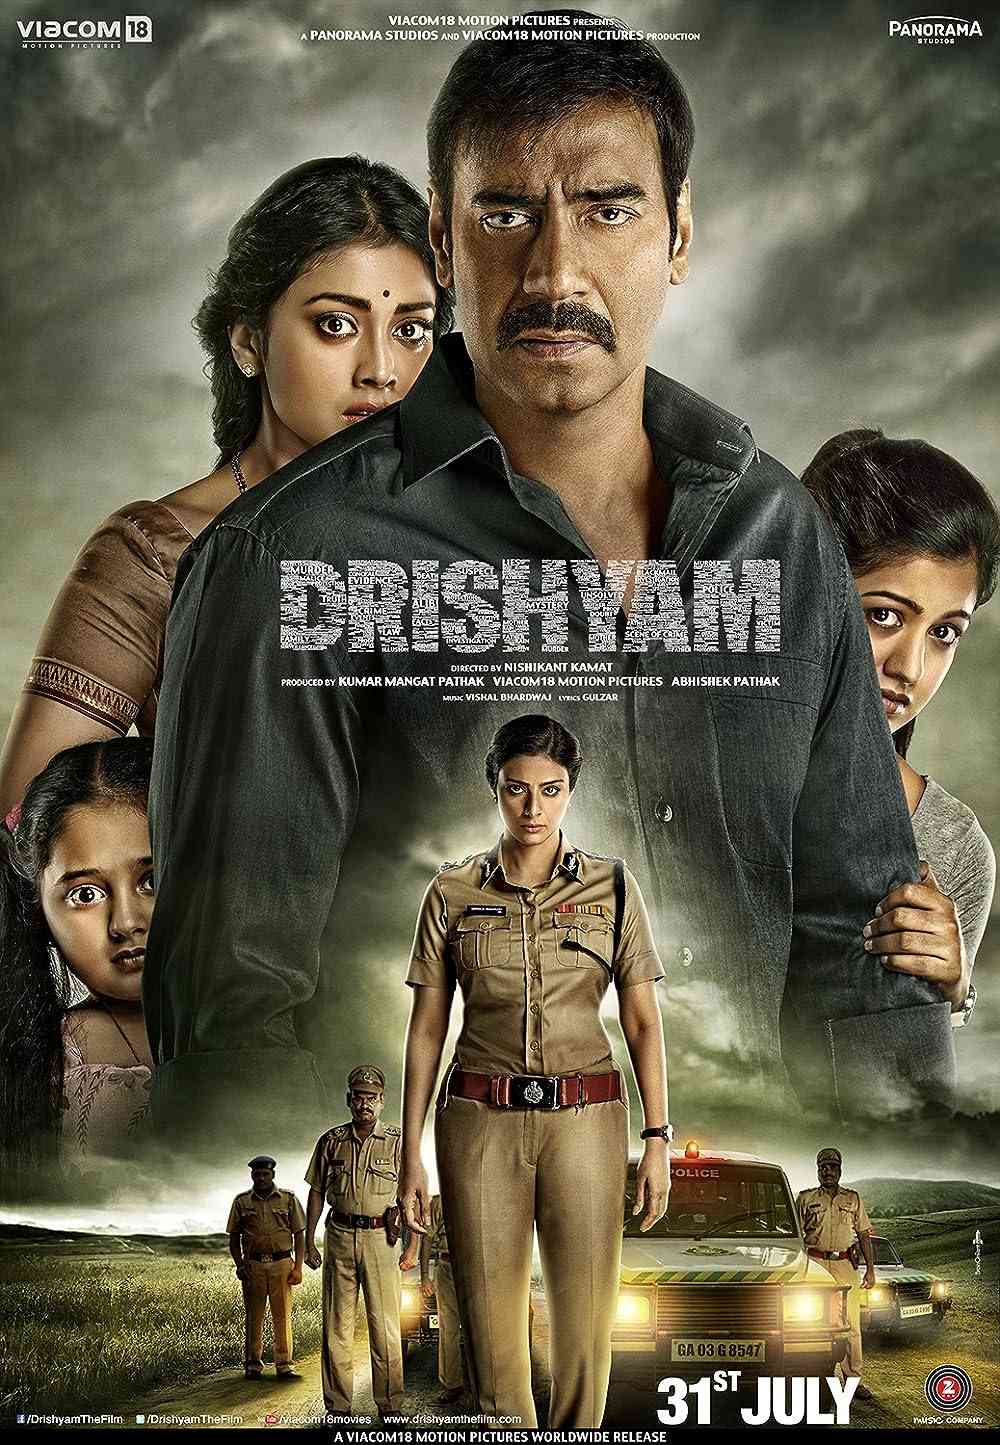 FULL MOVIE: Drishyam (2015)